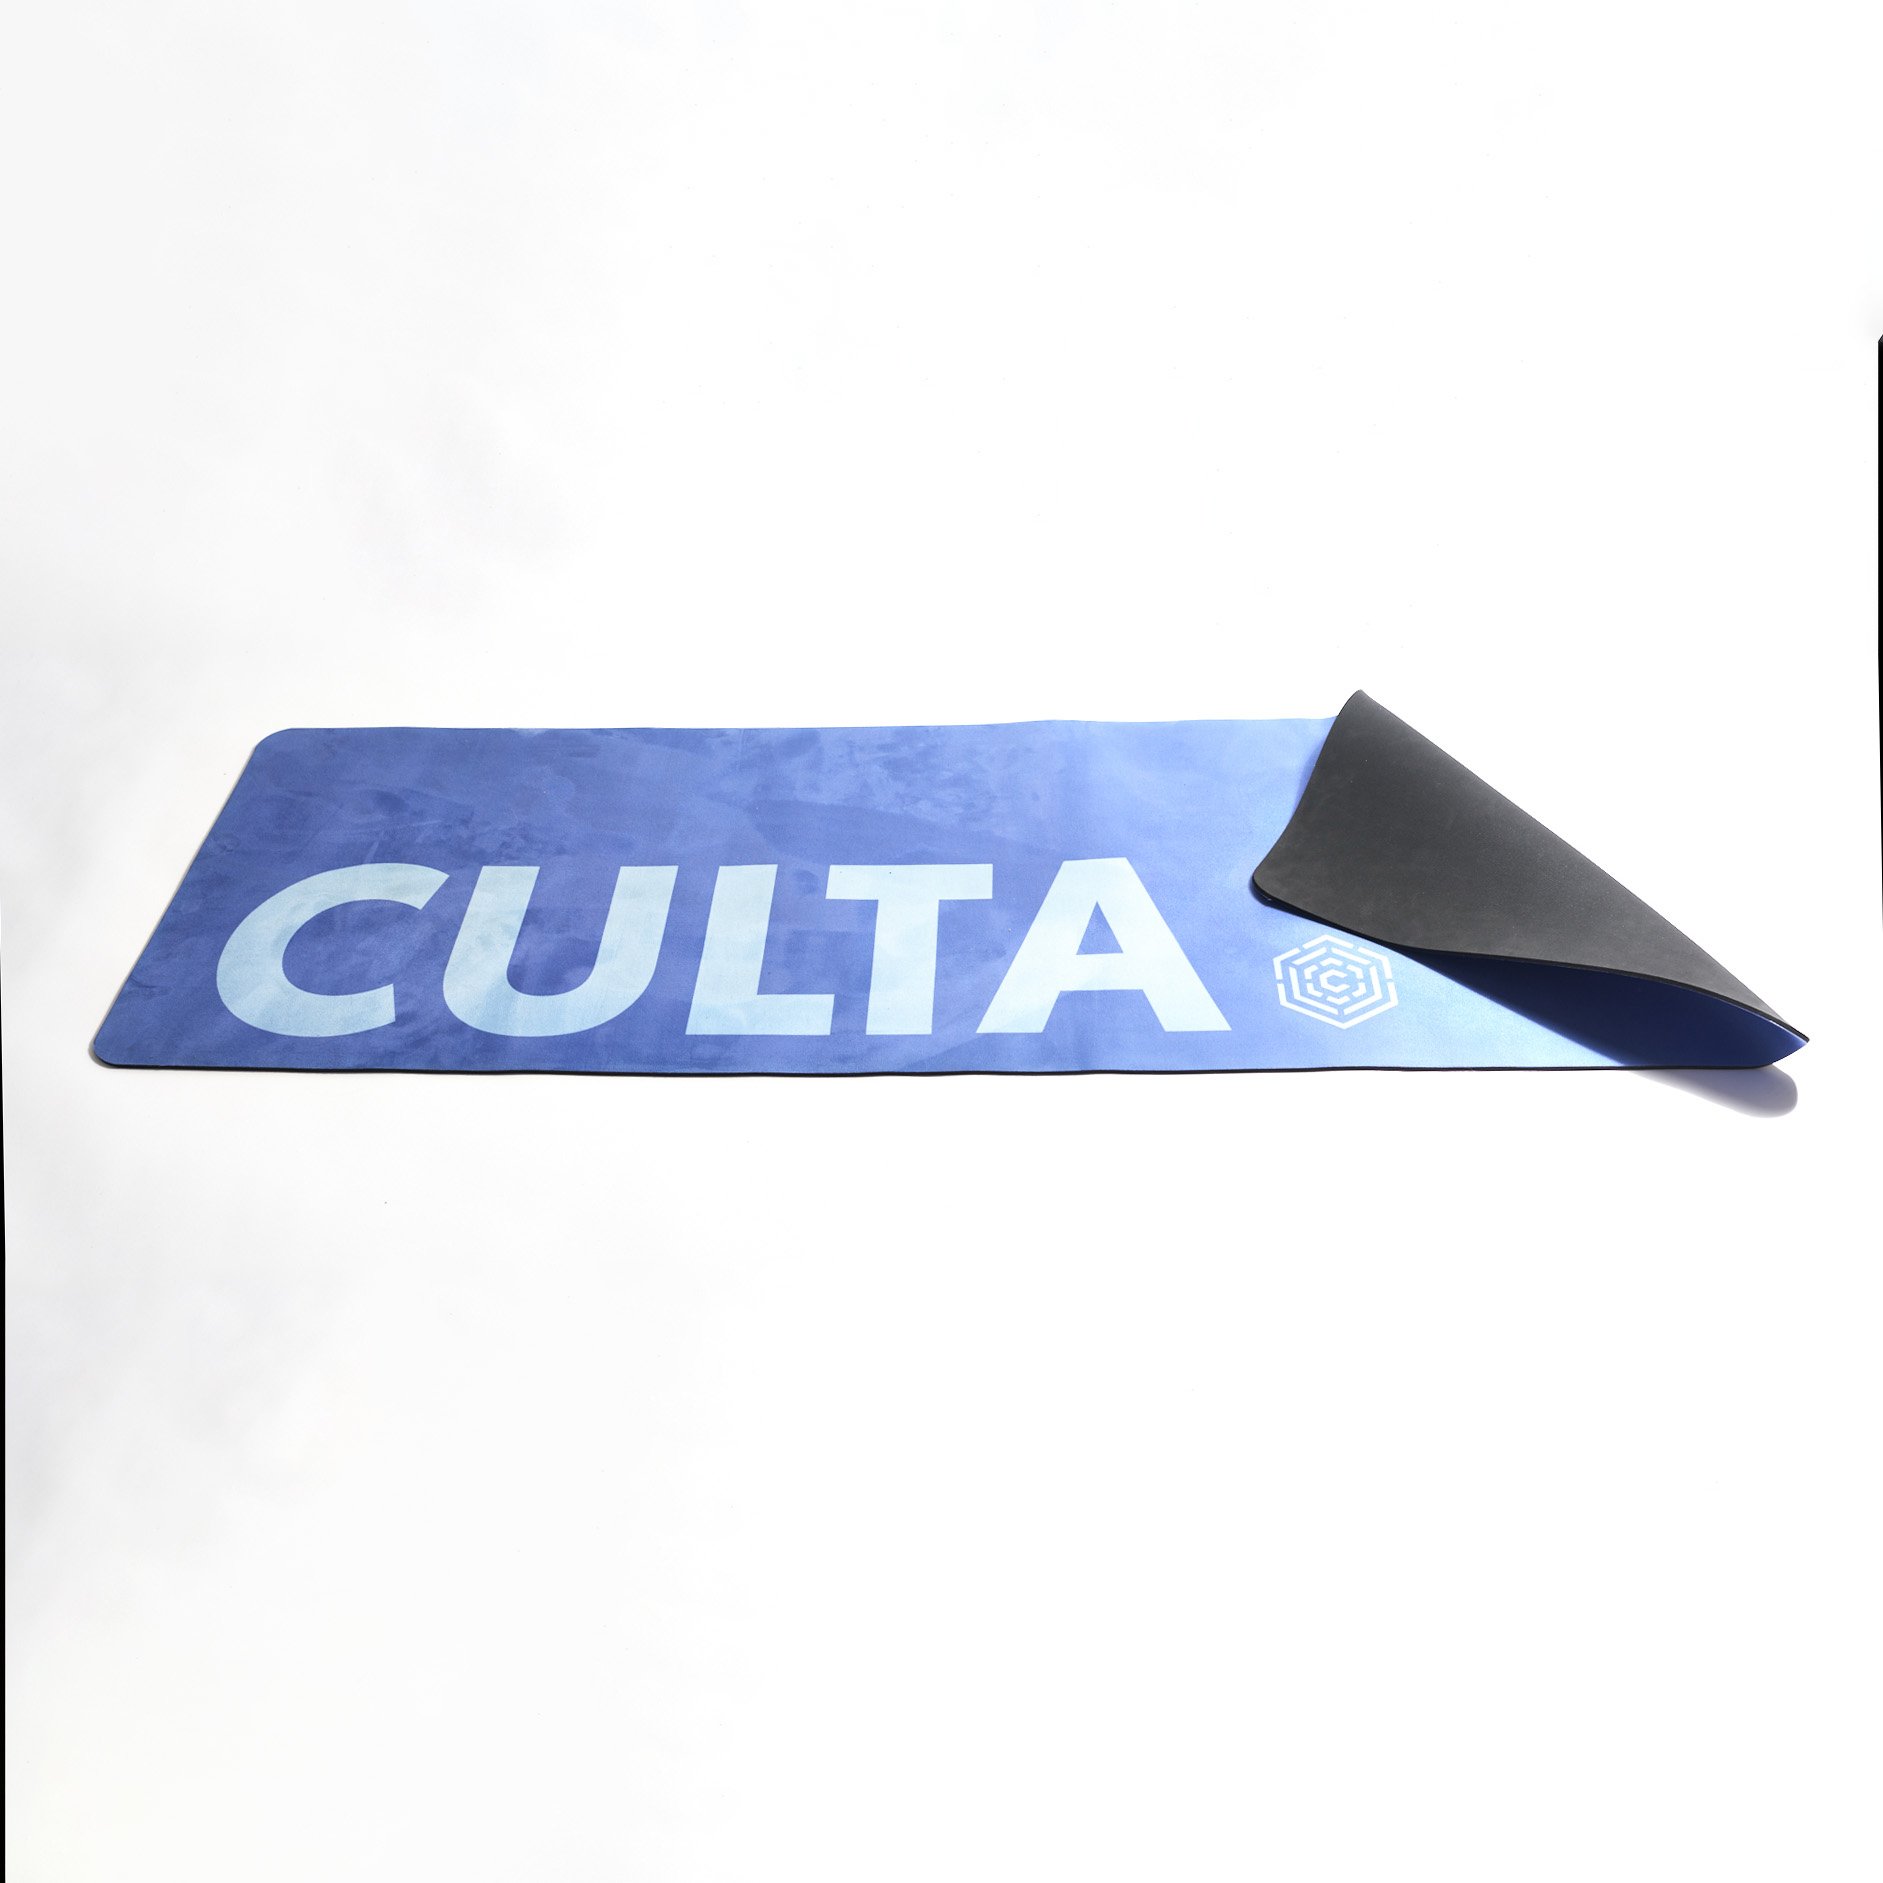 20-12-8-Culta-product11097.jpg